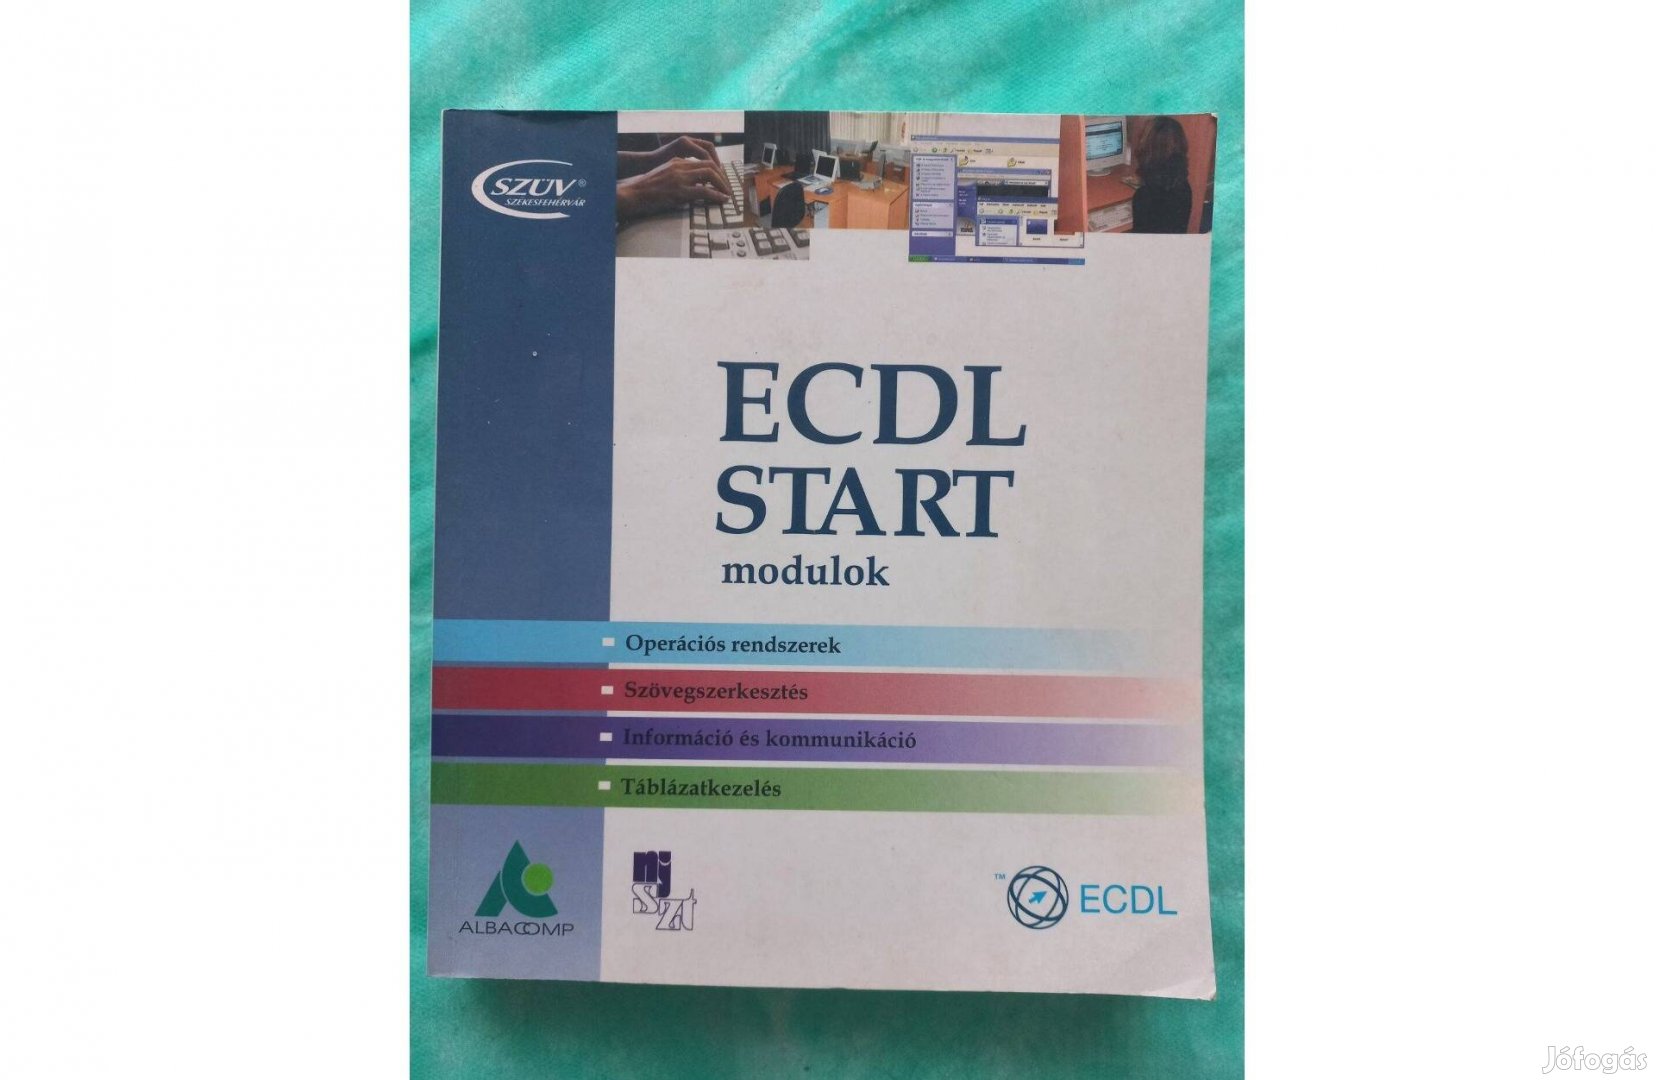 ECDL modulok / Operációs rendszerek / Excel / Word